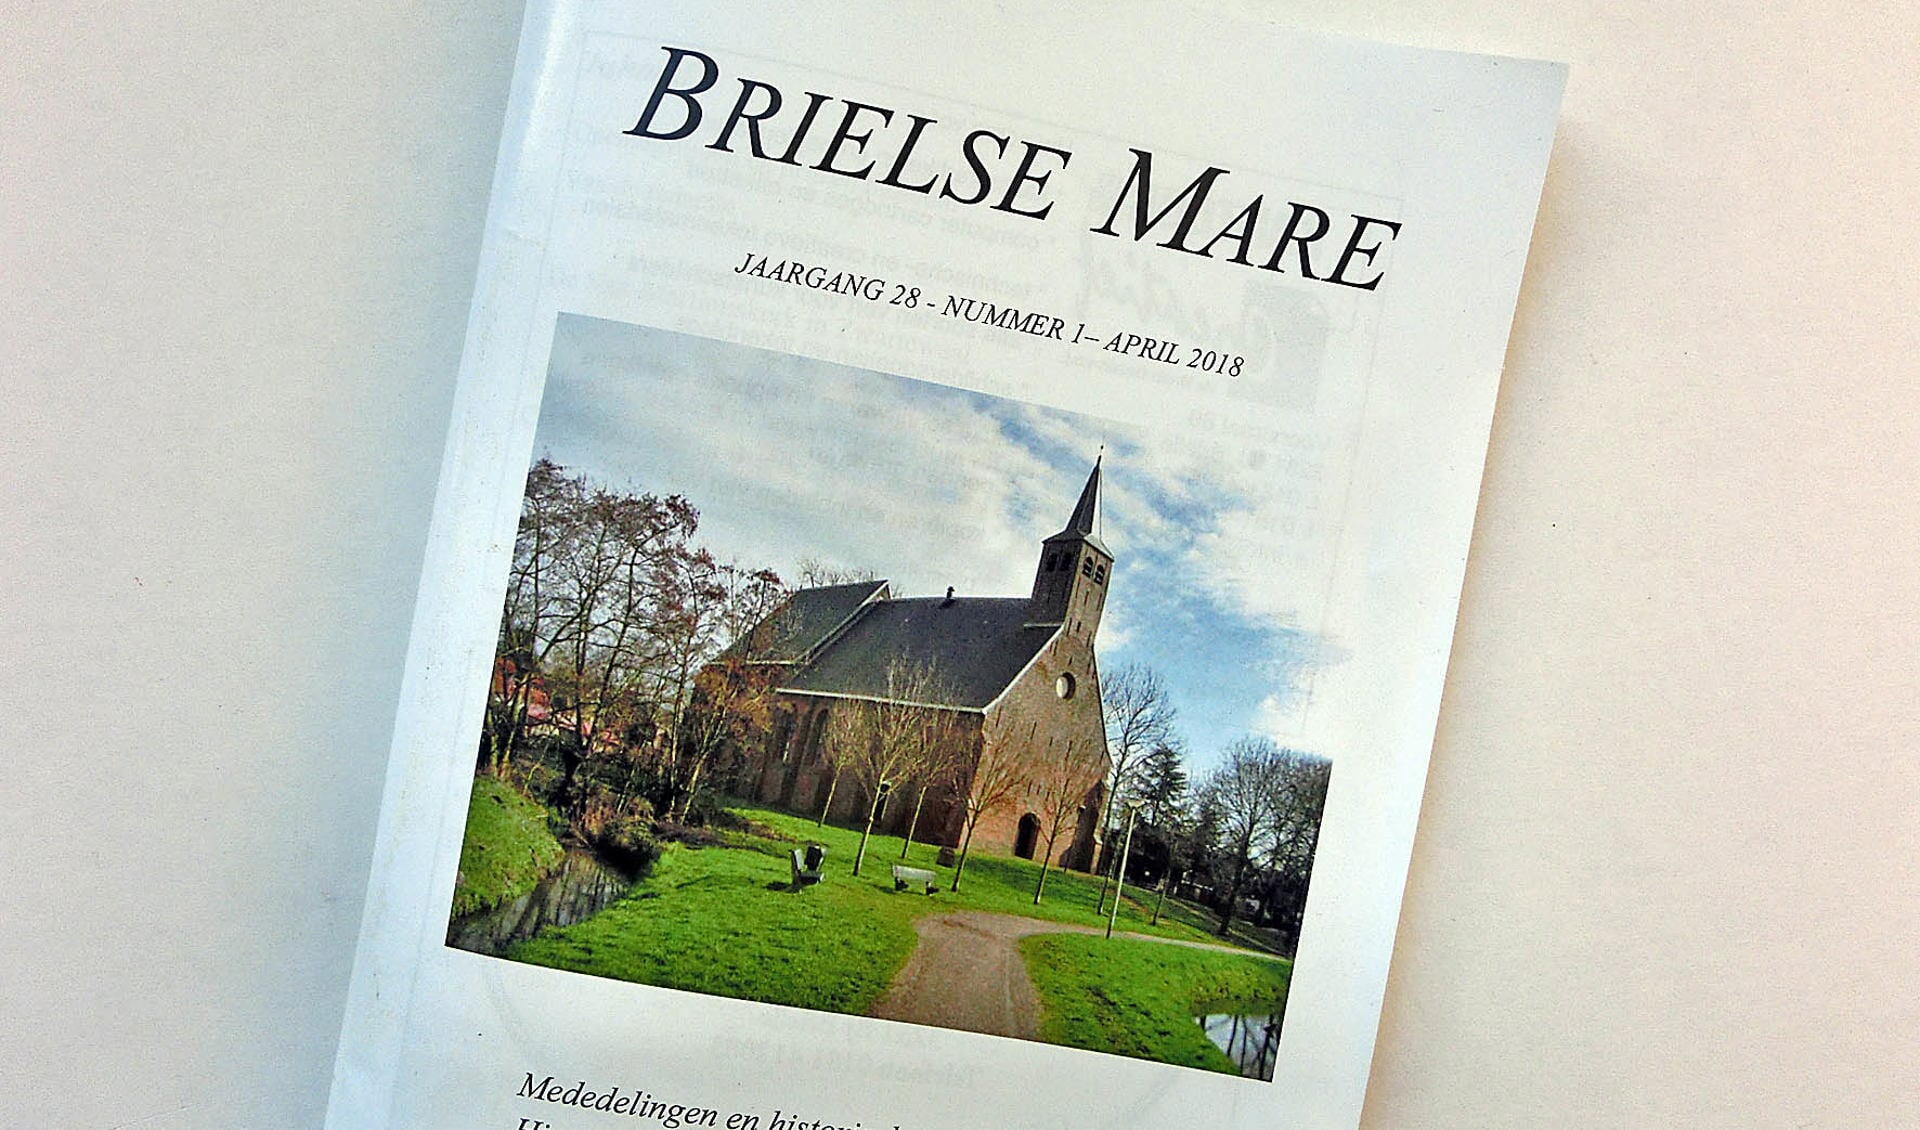 De Martinuskerk in Zwartewaal staat op de cover van het voorjaarsnummer van de Brielse Mare